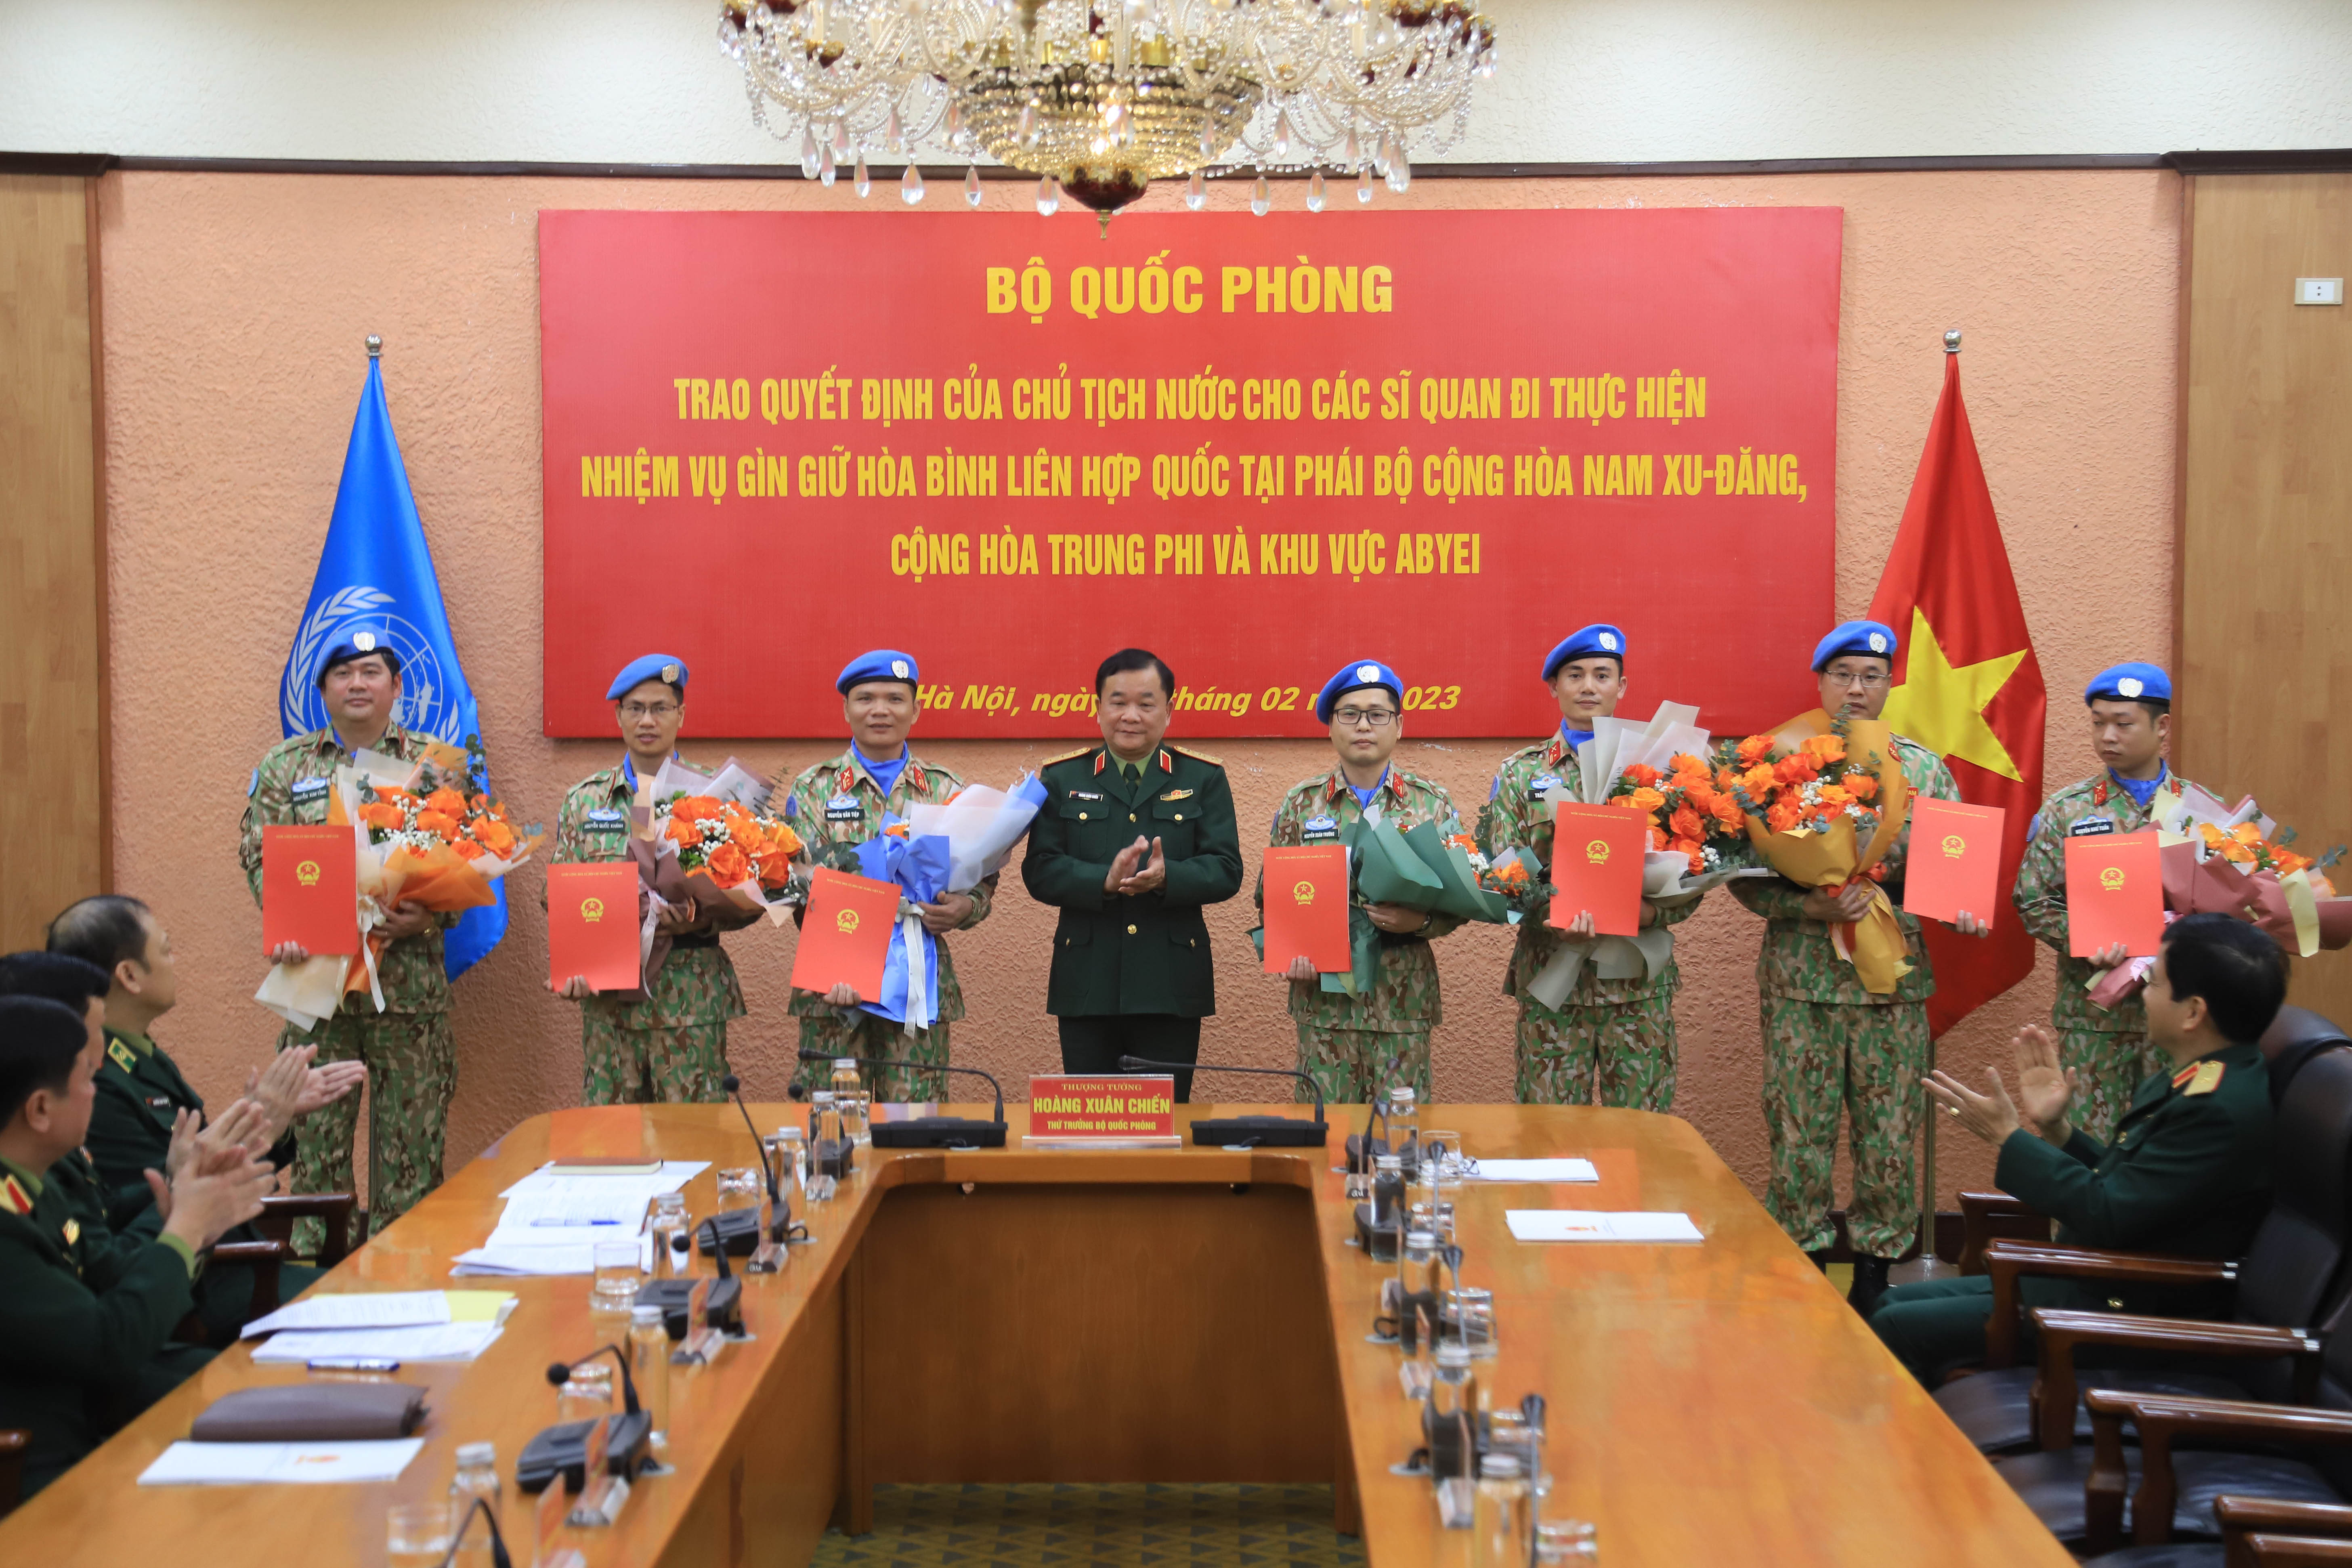 Trao quyết định của Chủ tịch nước cho 7 sĩ quan quân đội gìn giữ hòa bình